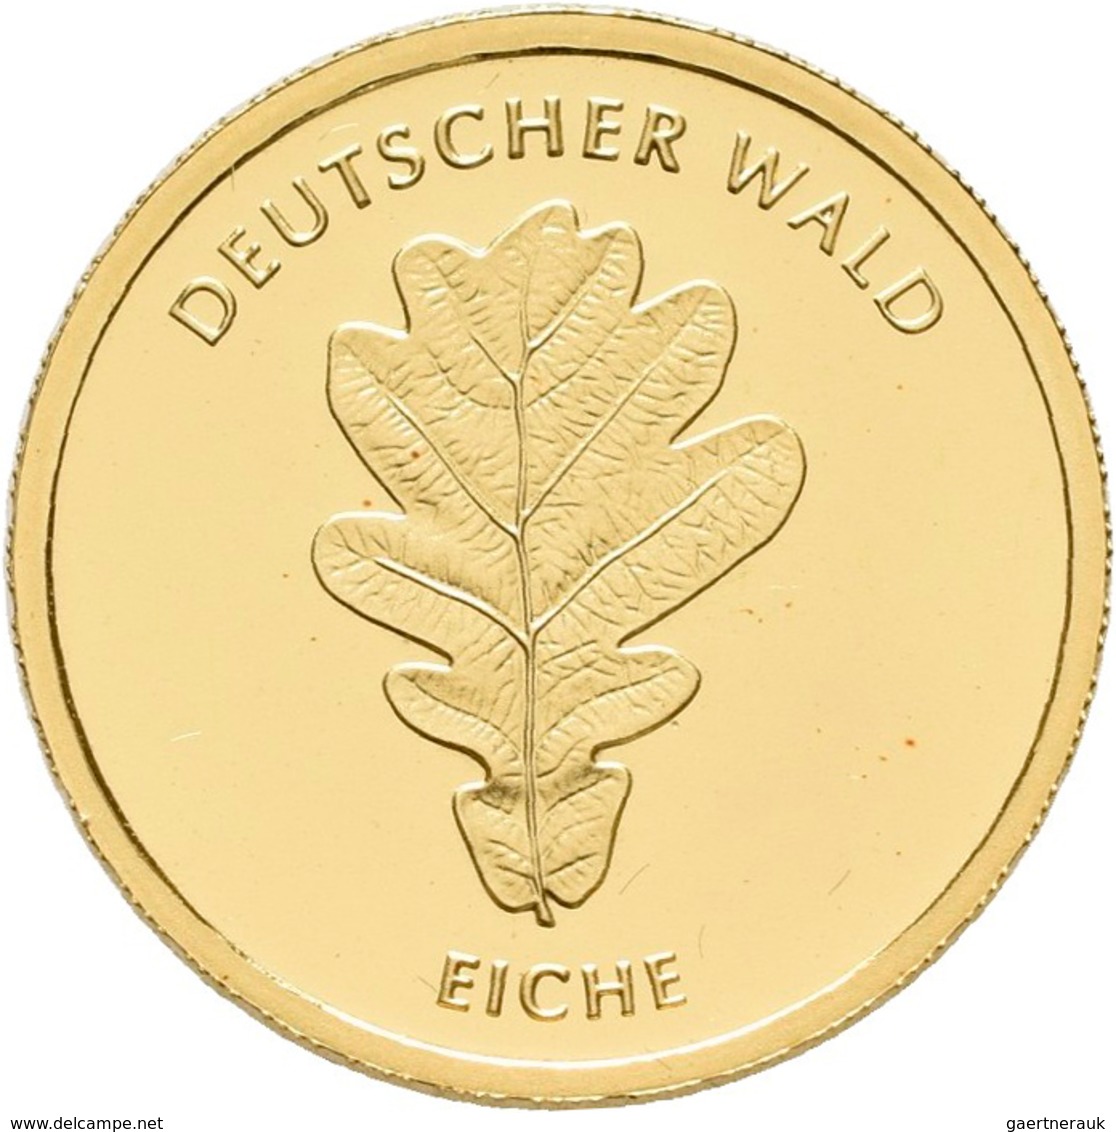 Deutschland - Anlagegold: 20 Euro 2010 Eiche A - Berlin. Serie Deutscher Wald. Jaeger 552. 3,89 G, 9 - Duitsland